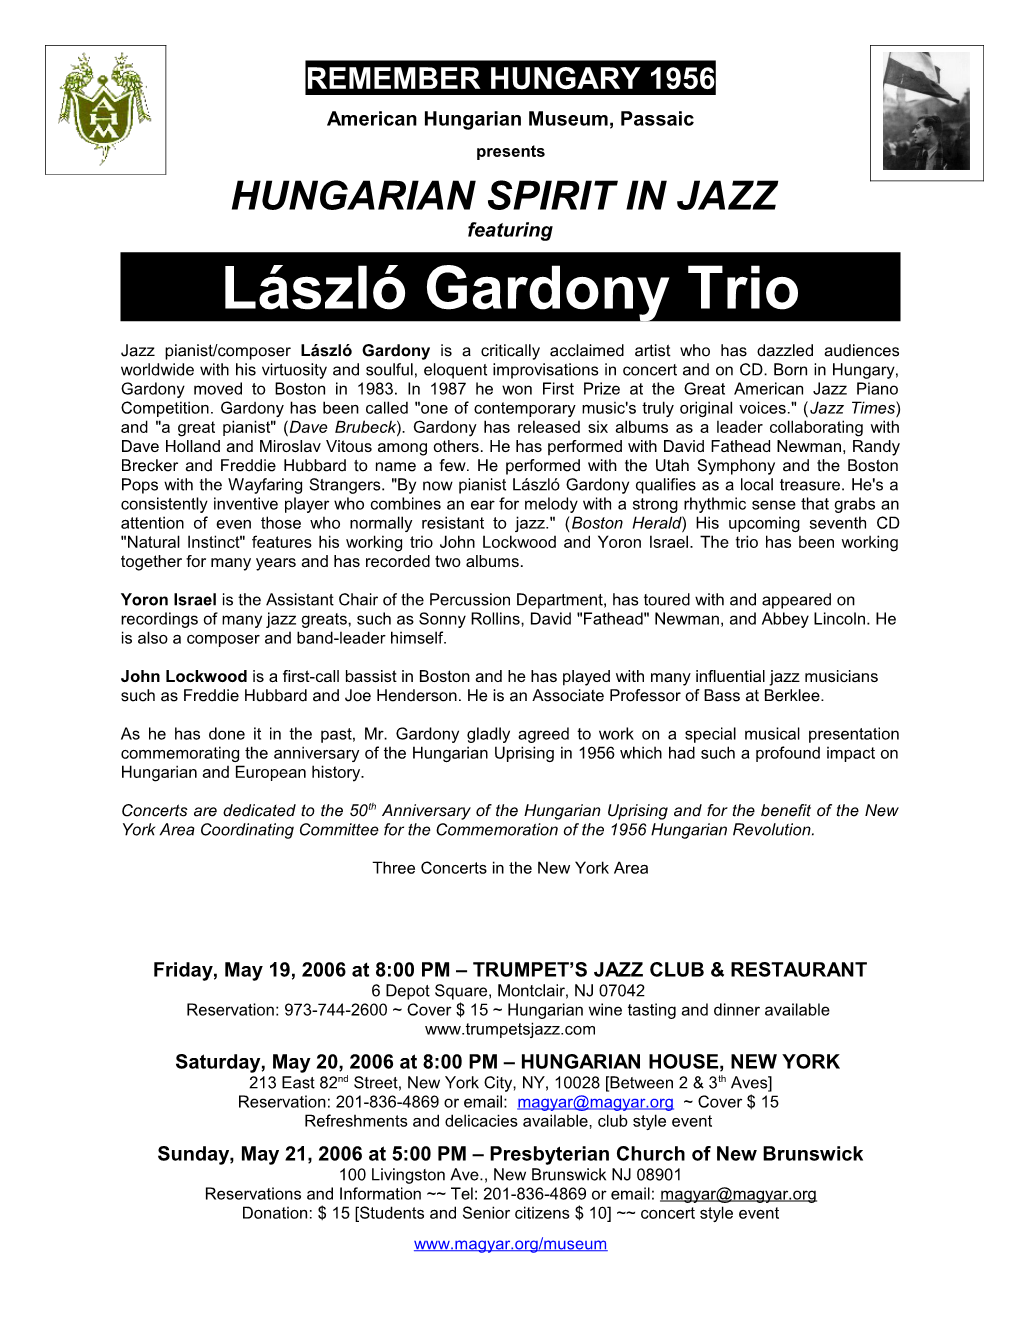 Hungarian Spirit in Jazz